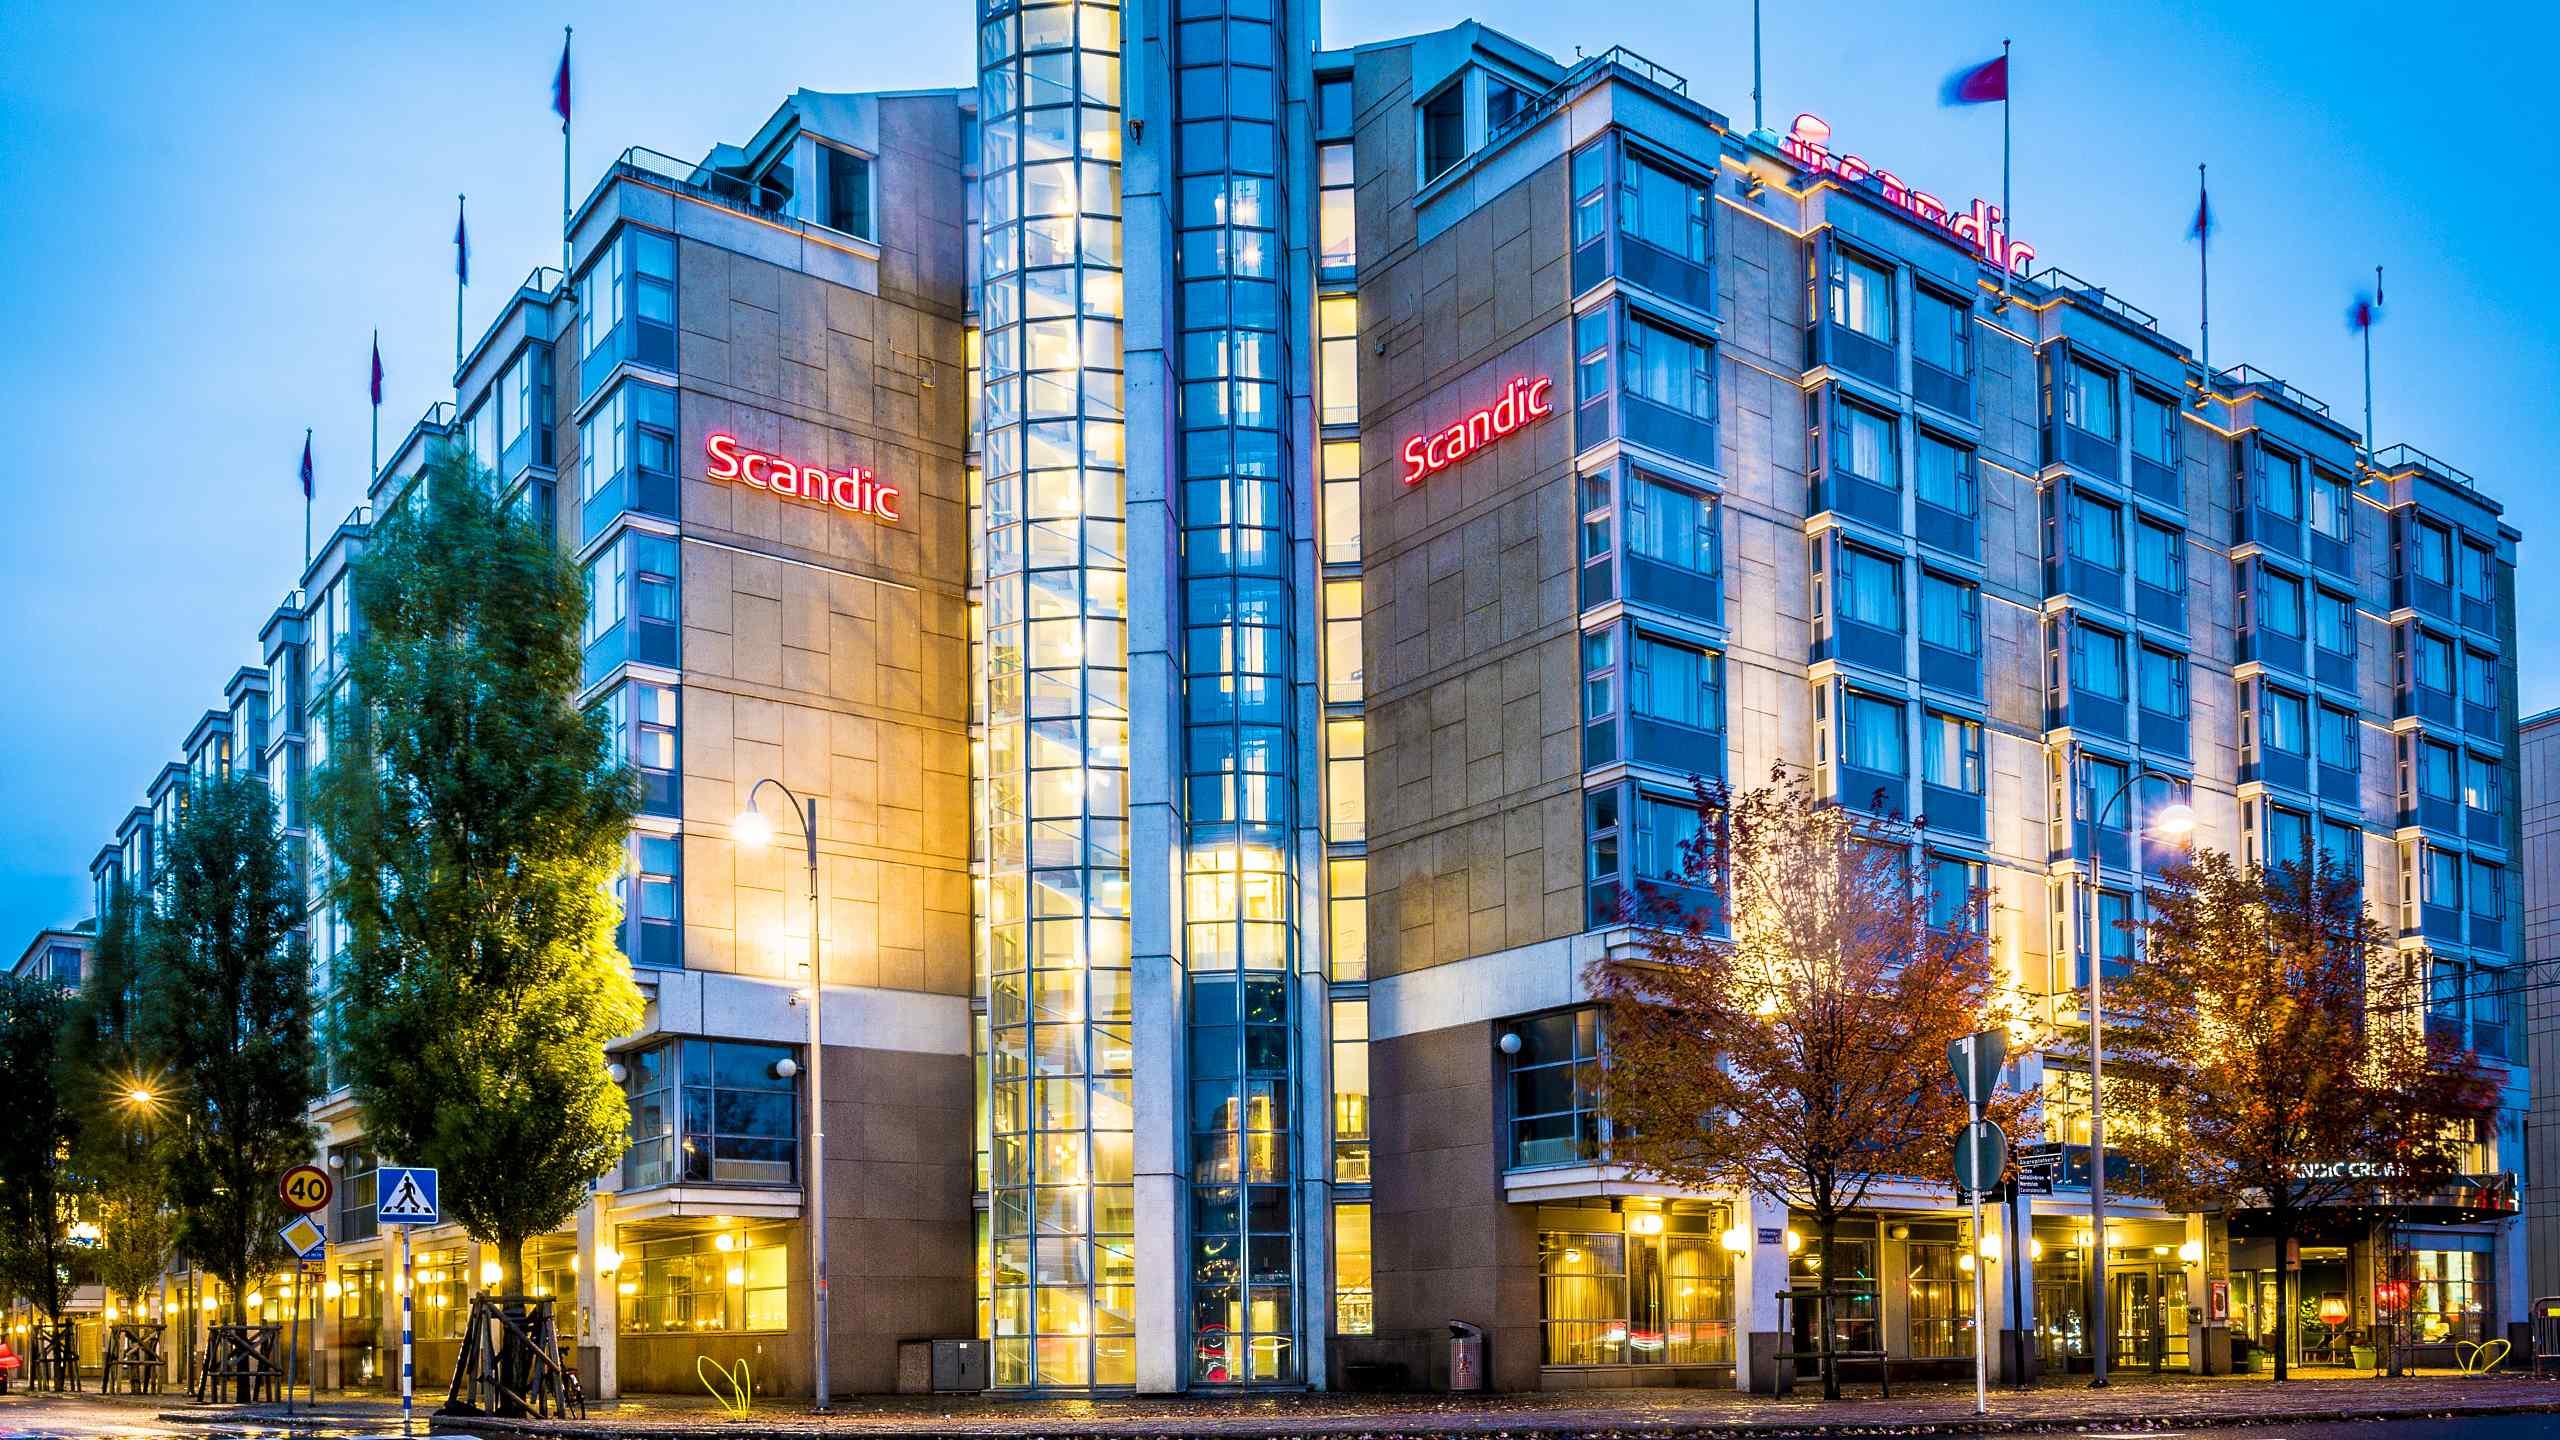 Scandic. Scandic Hotels в Швеции. Сеть отелей Scandic в Швеции. Отели Гетеборга. Отели в Гетеборге Швеция.